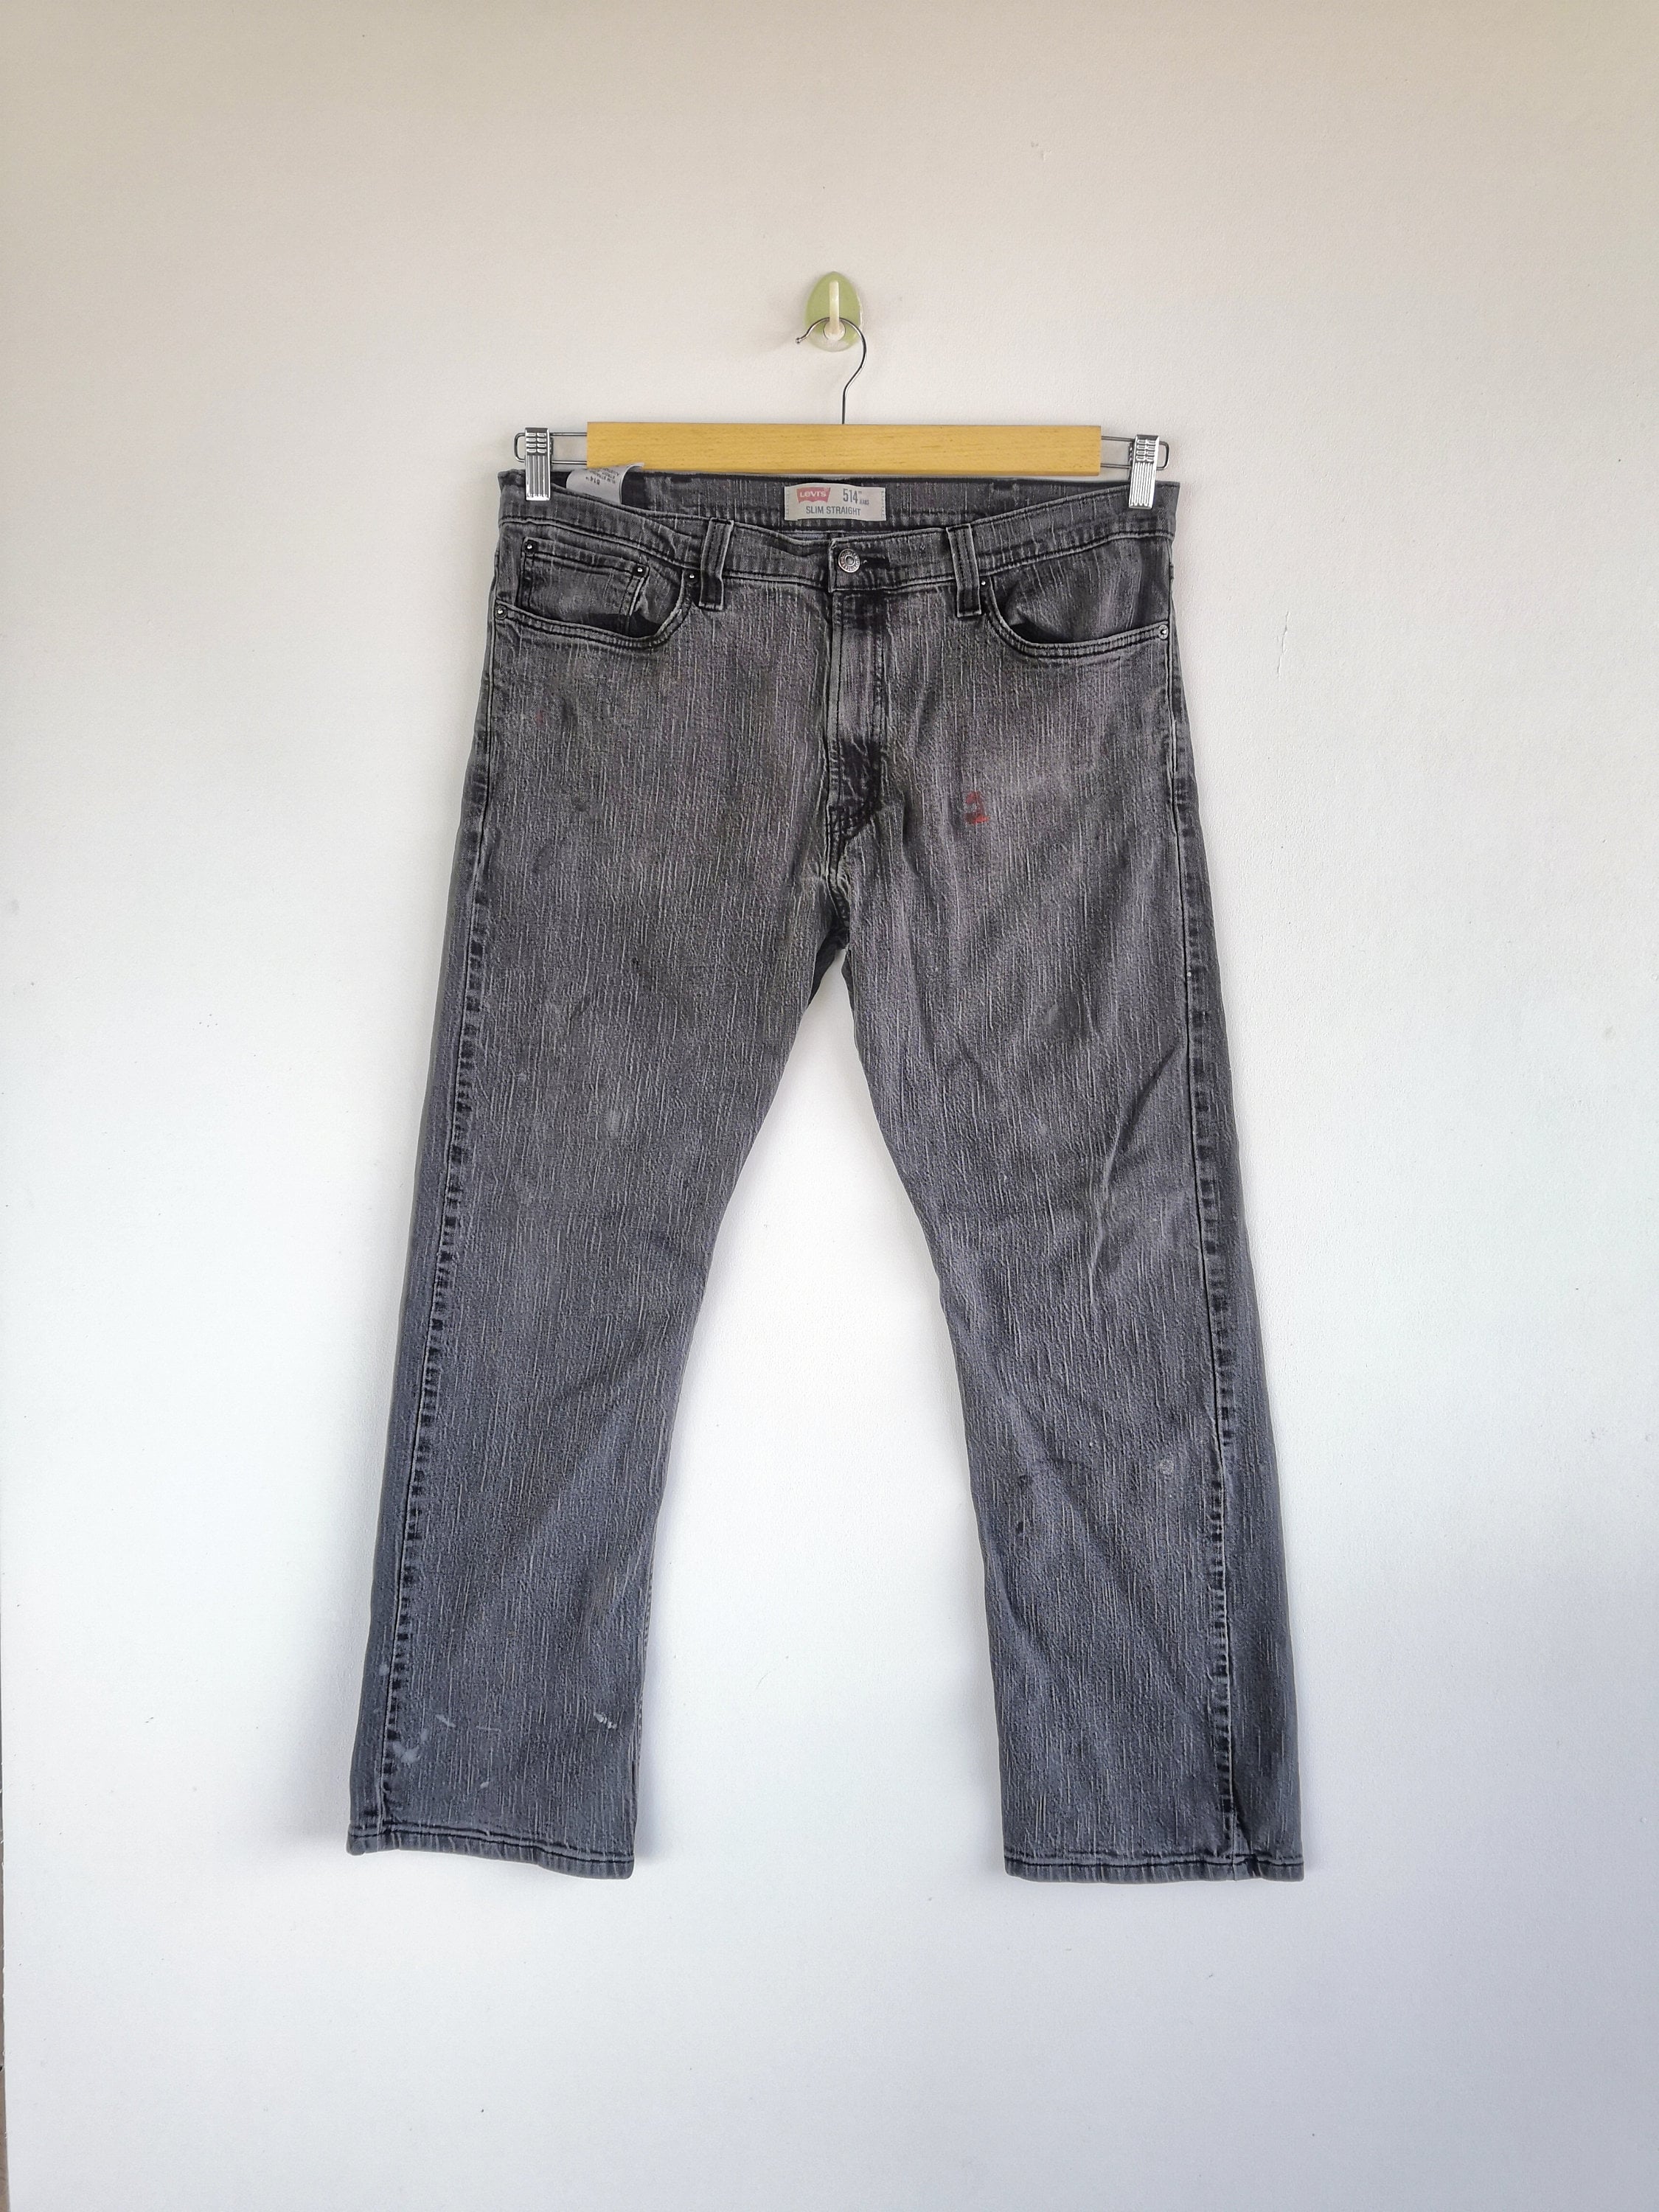 W36 Levis 514 Jeans Super Black Jeans Levi 514 Denim Womens - Etsy